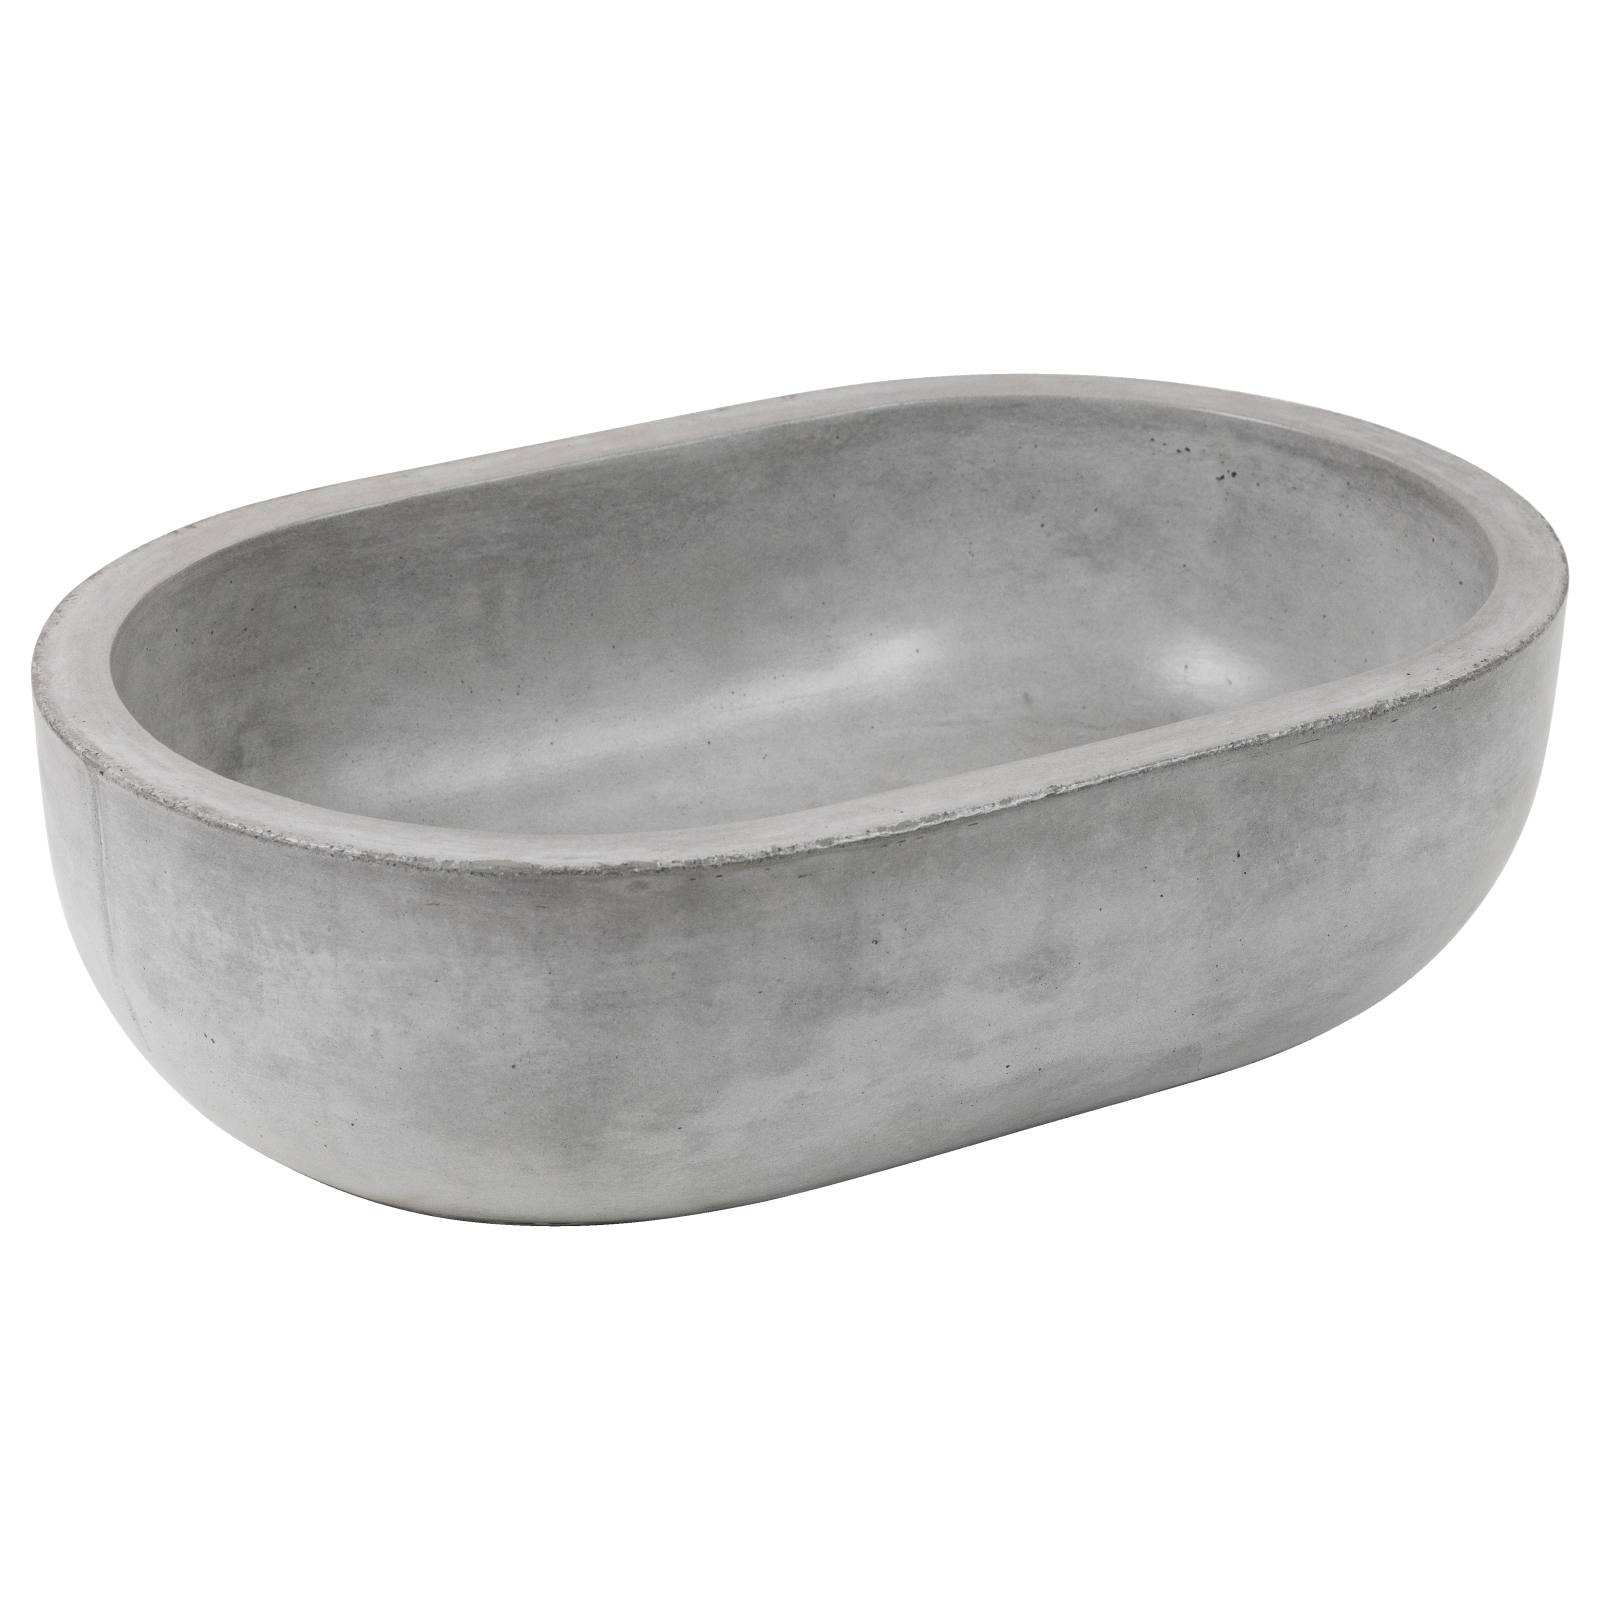 Bowman Oval Concrete Sink Grey Polished Concrete